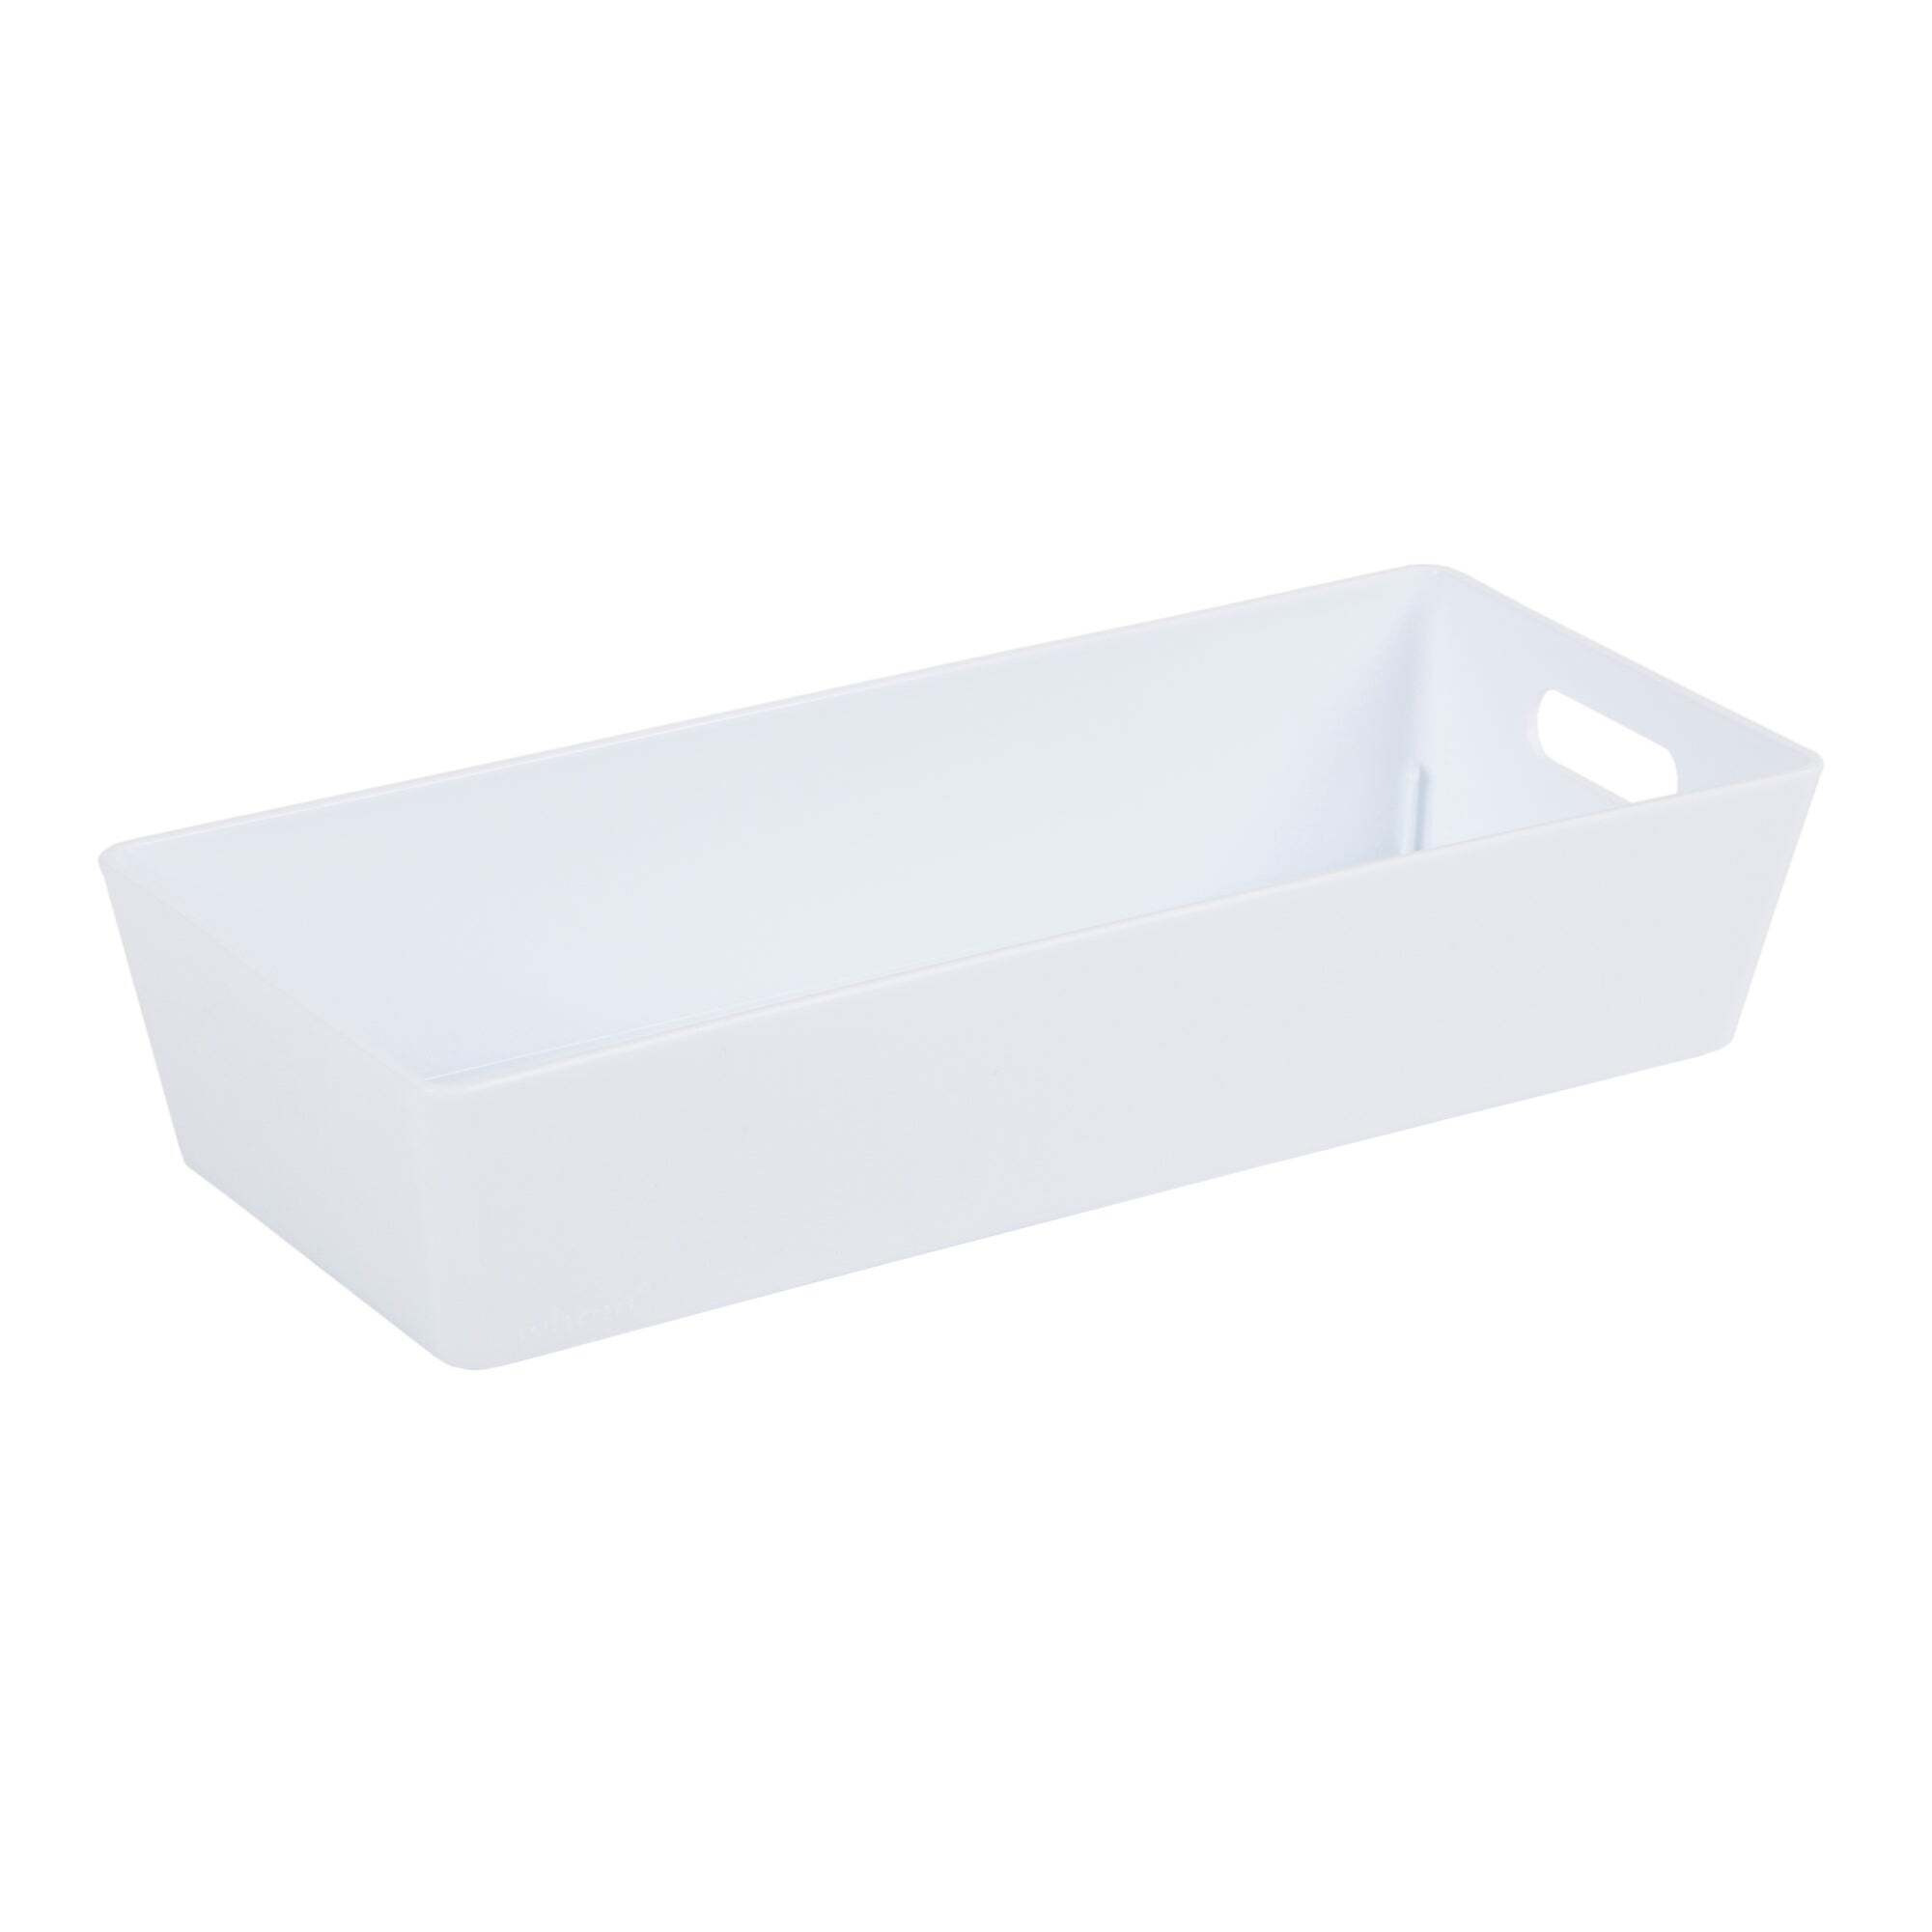 Wham Studio Plastic Storage Basket 2.01 White